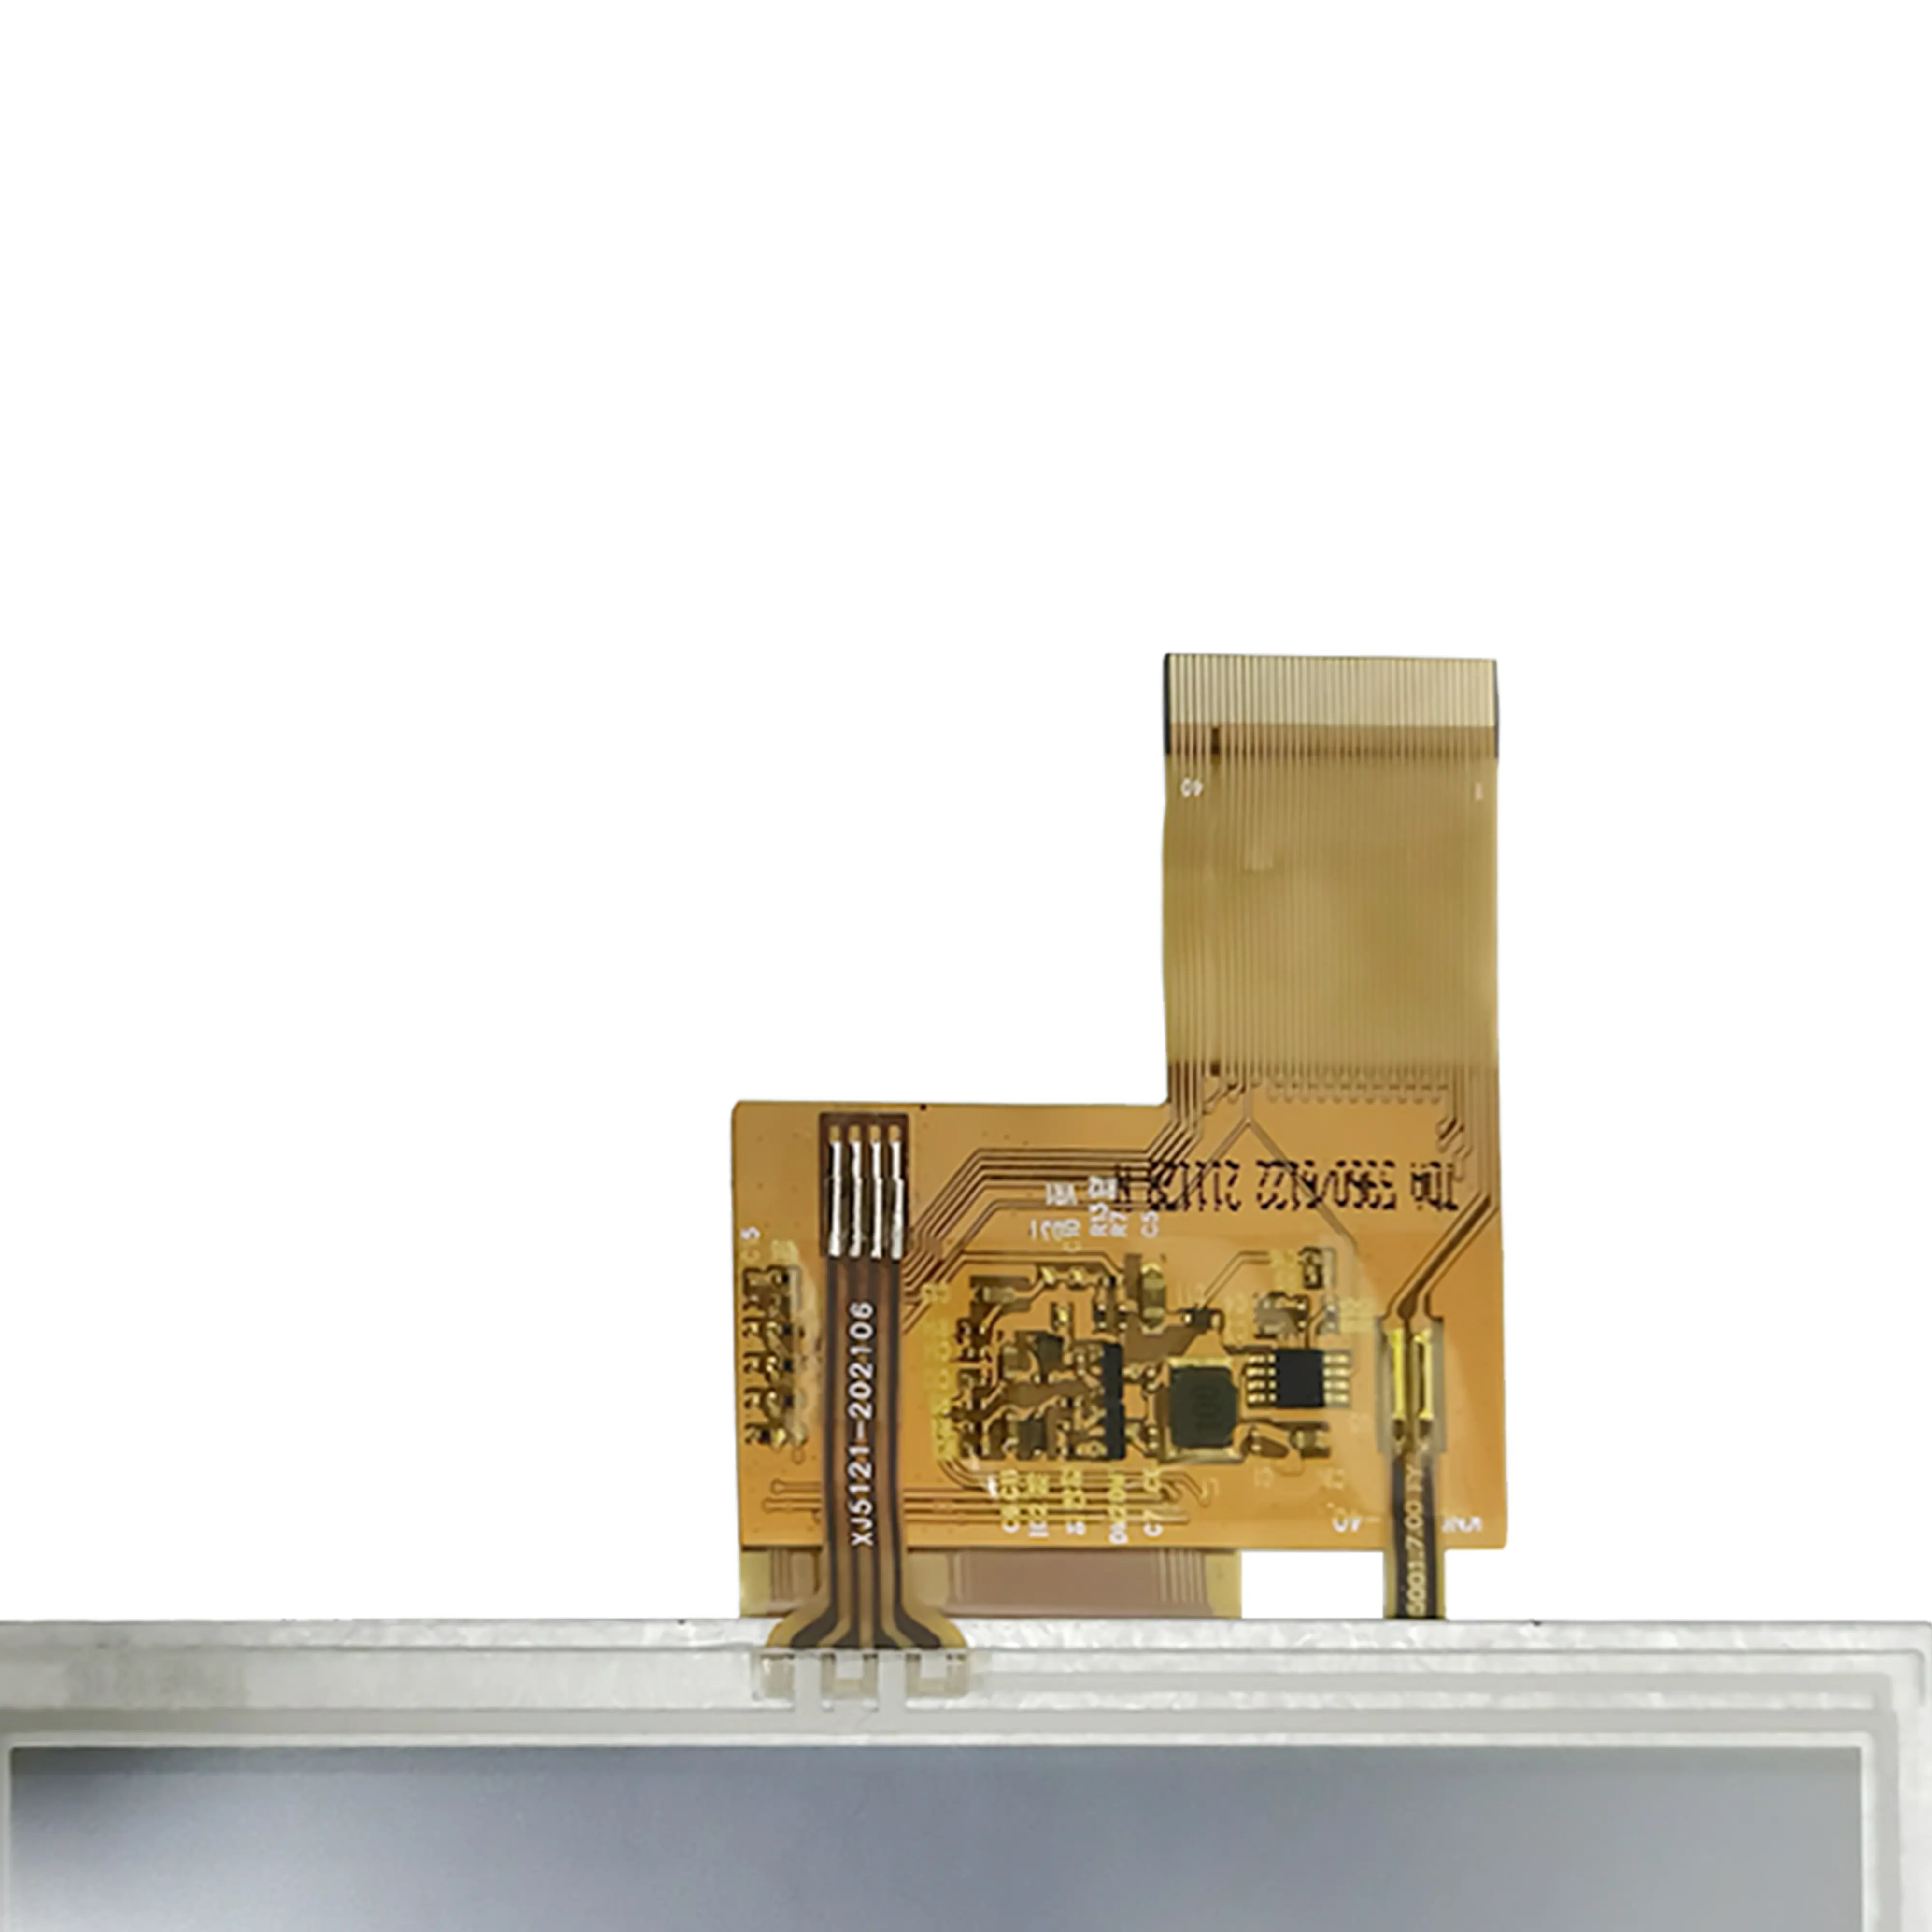 Tela LCD de 5 polegadas para monitor de toque, painel de módulo TFT 5" LCD, fornecedor industrial de substituição para tela de cristal líquido